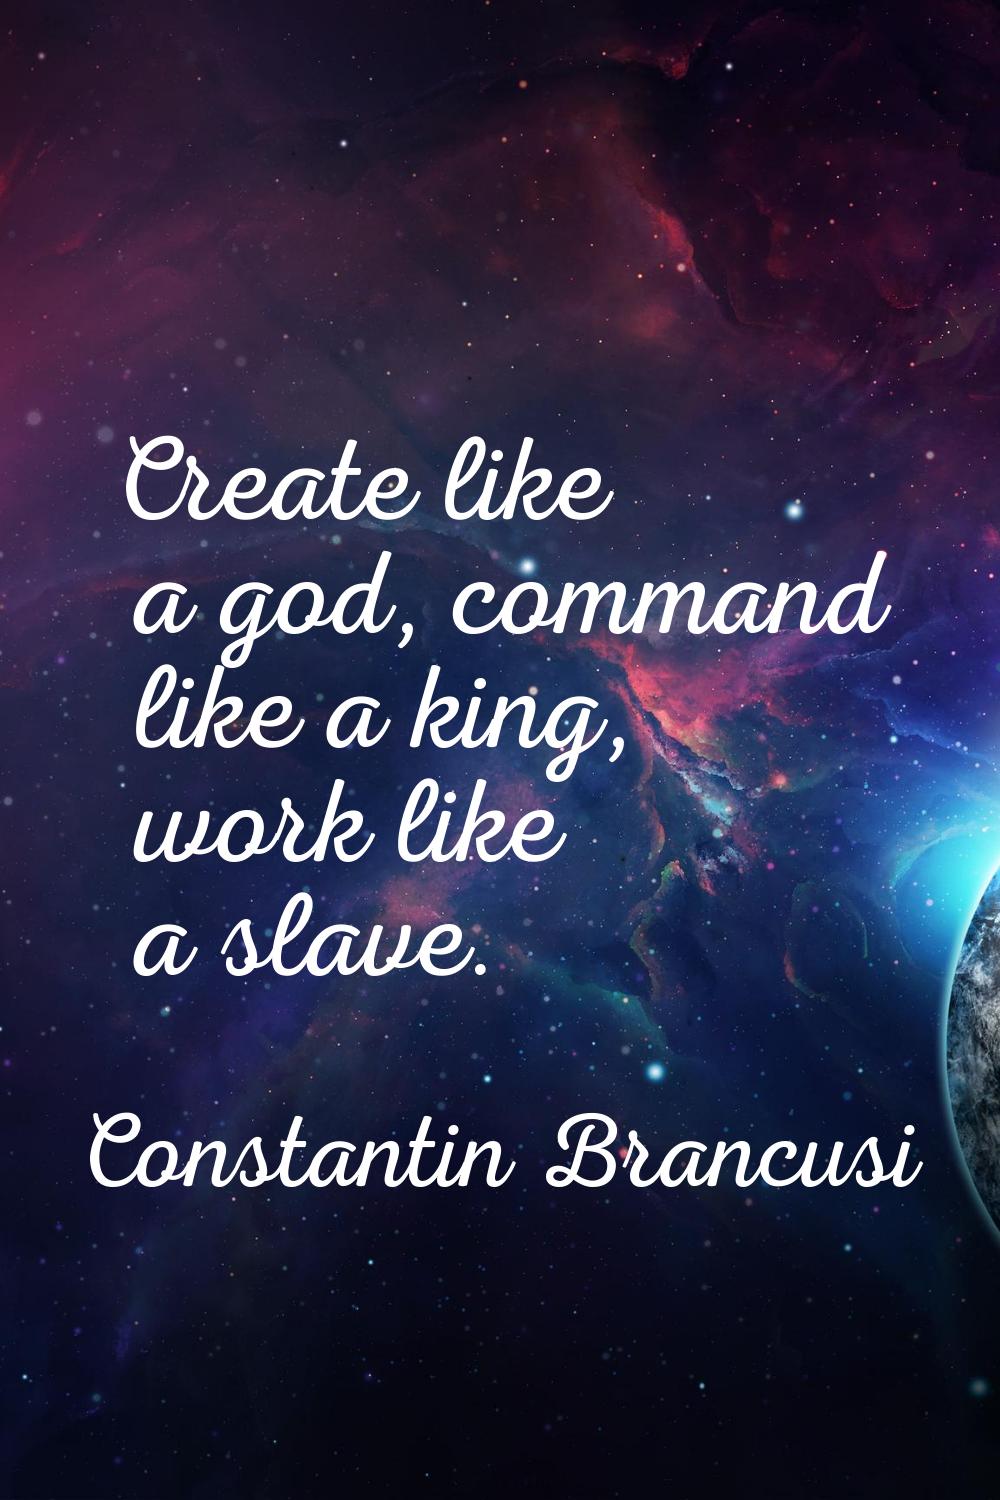 Create like a god, command like a king, work like a slave.